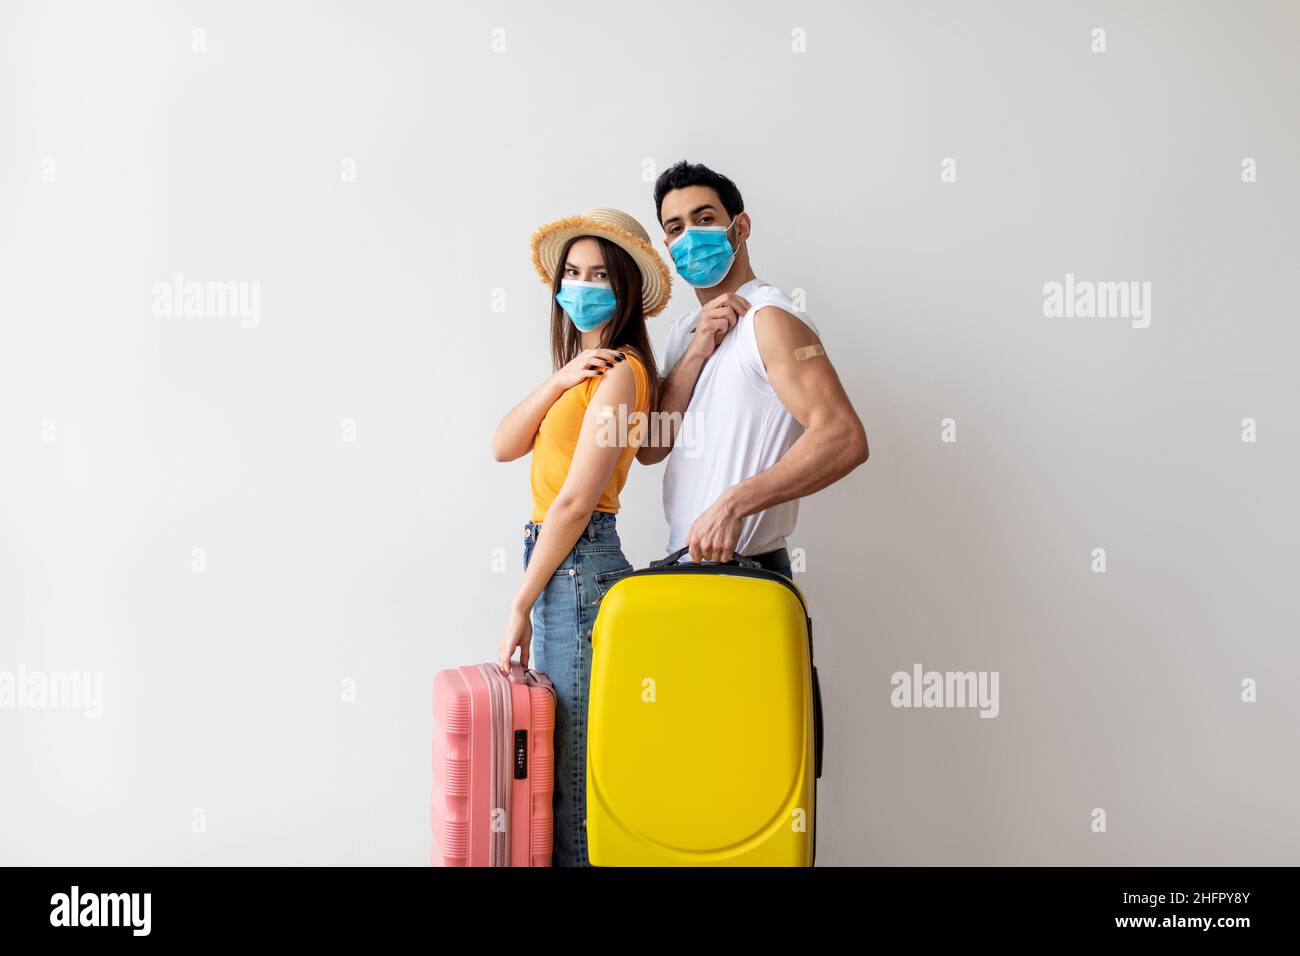 Jeune couple prêt pour un voyage de vacances d'été sûr, tenant des valises et montrant des armes après avoir reçu le vaccin Covid-19 Banque D'Images